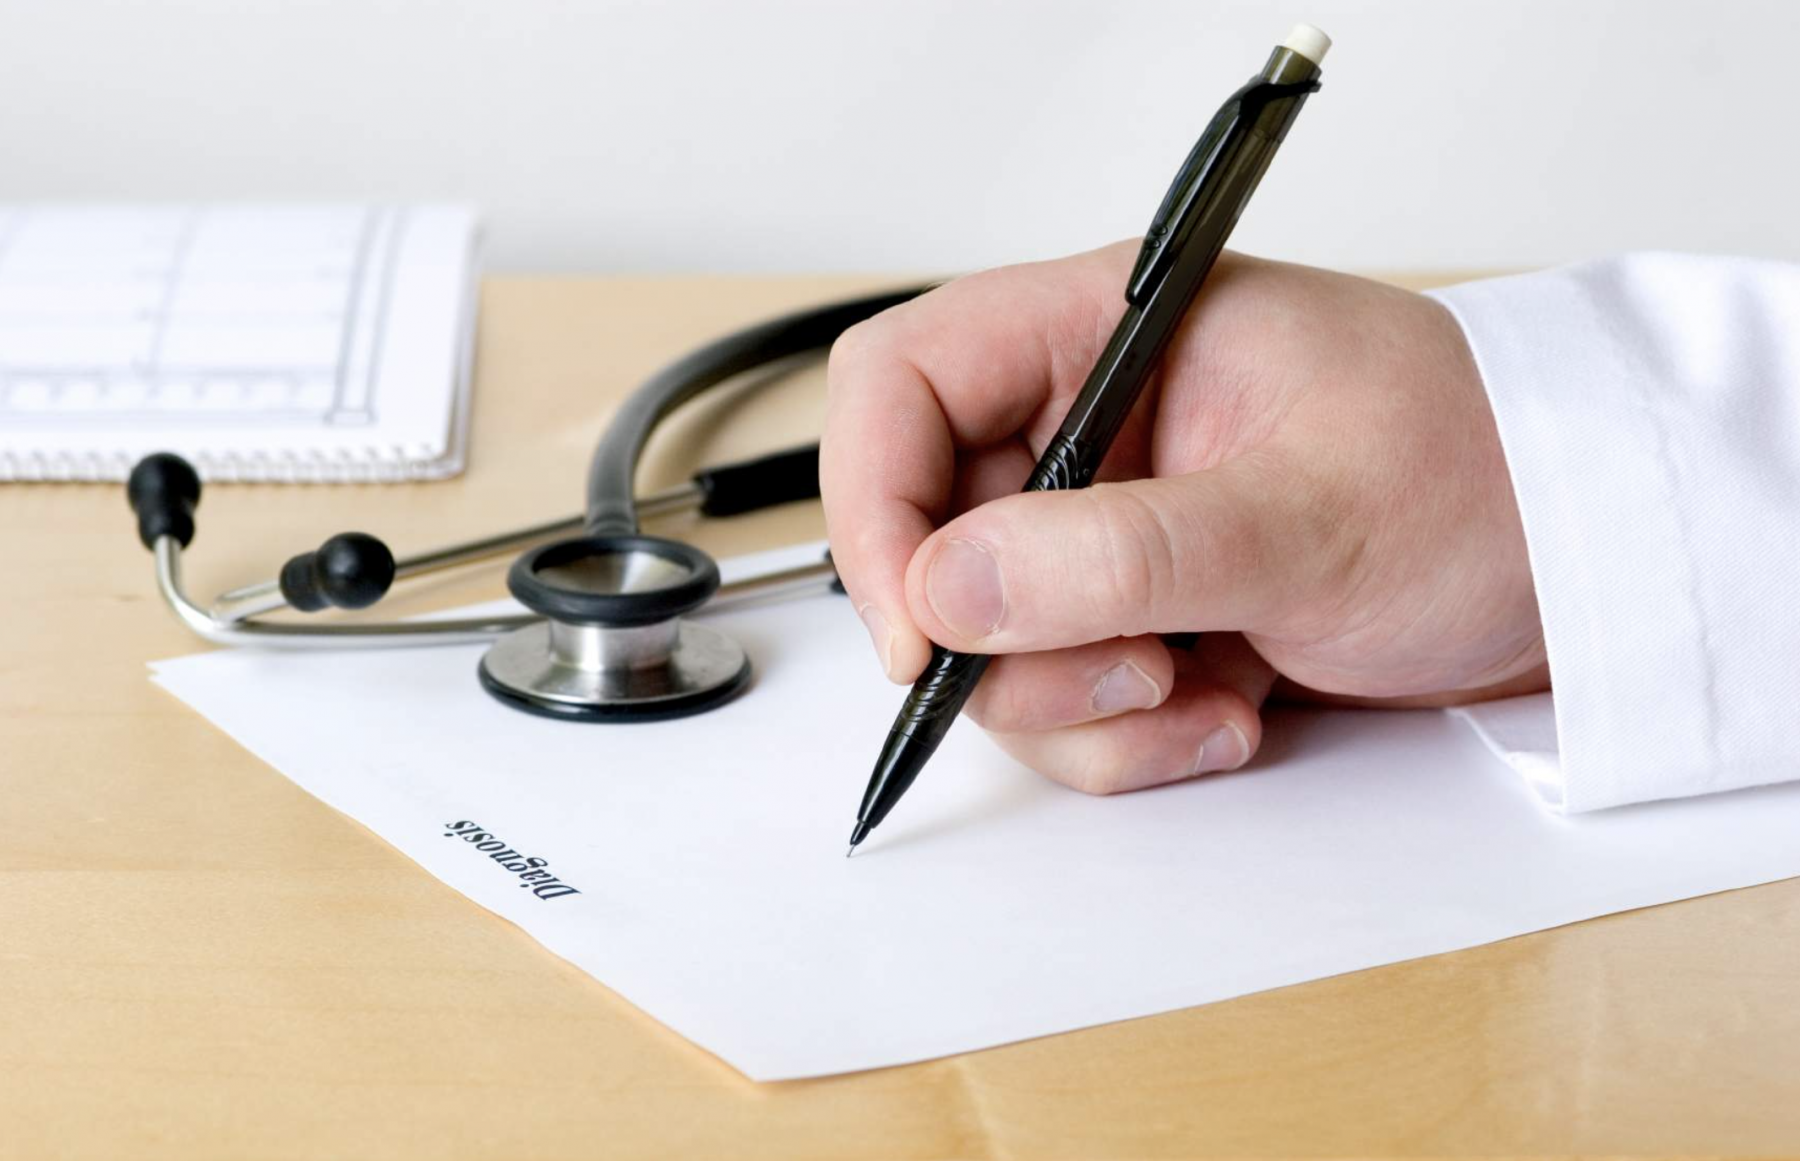 Συνταγογράφηση ανασφάλιστων: Από 1η Ιουλίου συνταγογράφηση μόνο από γιατρούς δημοσίου . Ποιοι εξαιρούνται ;